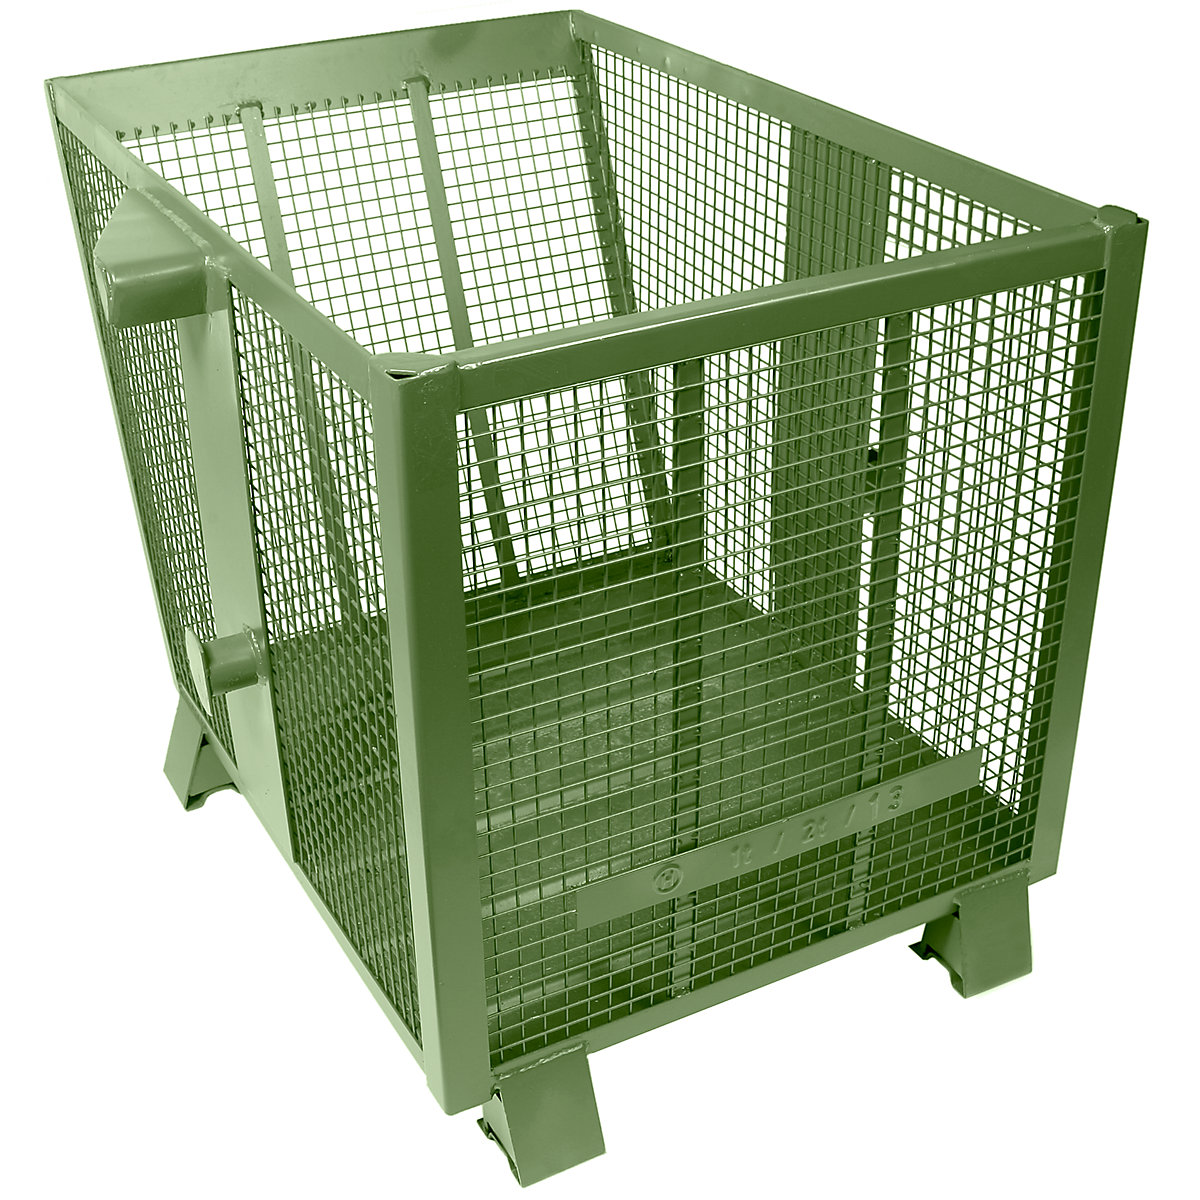 Gitterkippbehälter Heson, Volumen 0,9 m³, grün RAL 6011-4